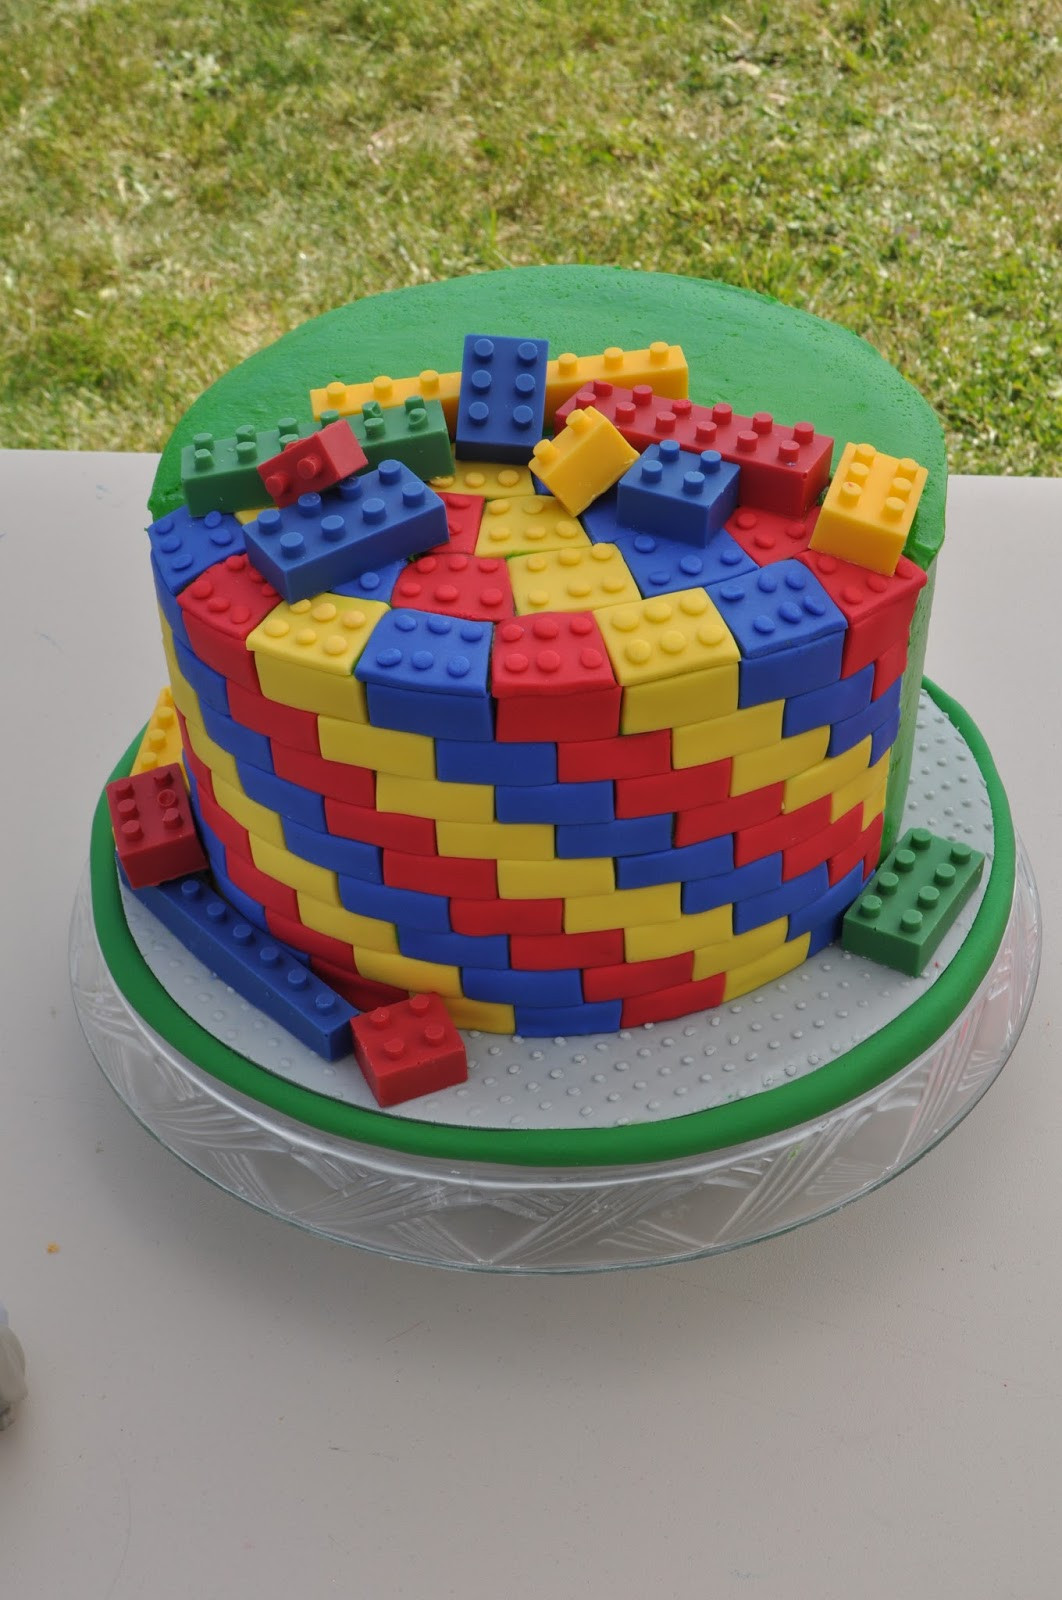 Lego Birthday Cake Best Of Peach Of Cake Lego Birthday Cake